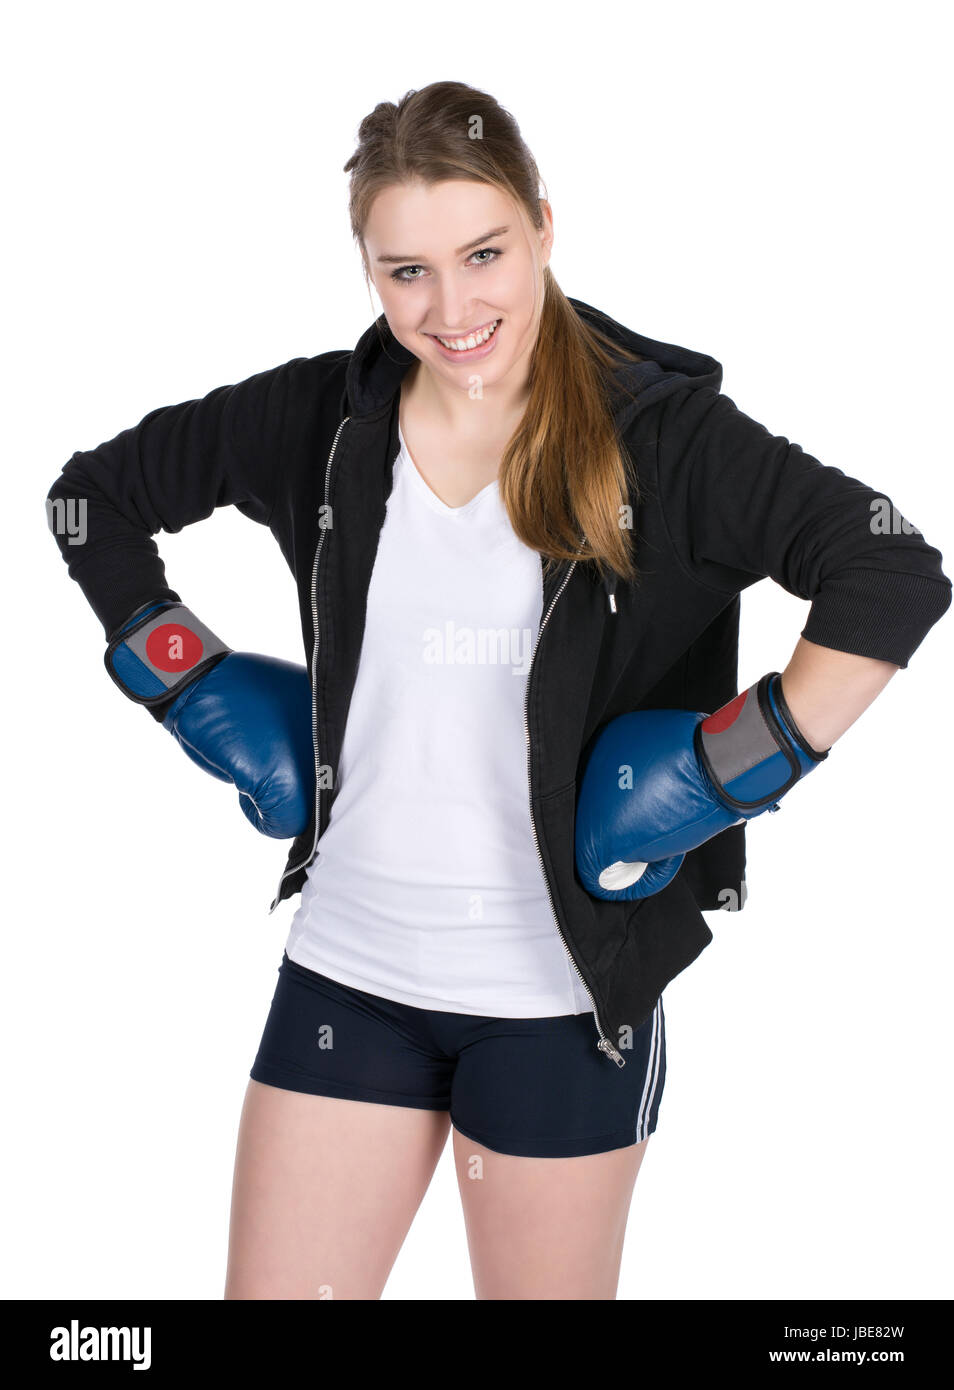 Freigestelltes Foto einer jungen lächelden Boxerin im Kapuzenpulli und mit blauen Boxhandschuhen Stock Photo